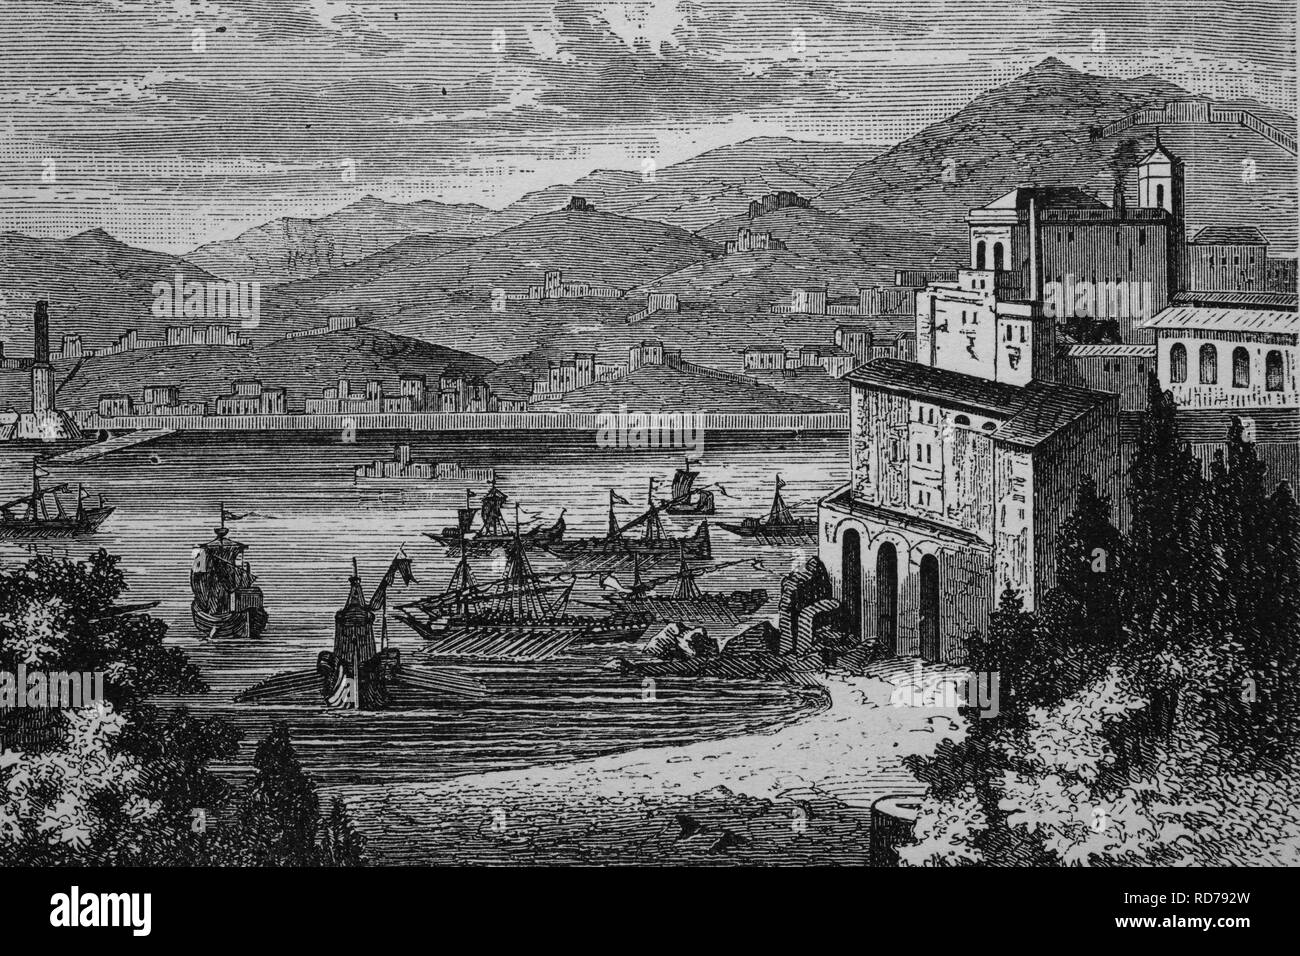 Gênes au Moyen Age, l'Italie, historique gravure sur bois, vers 1870 Banque D'Images